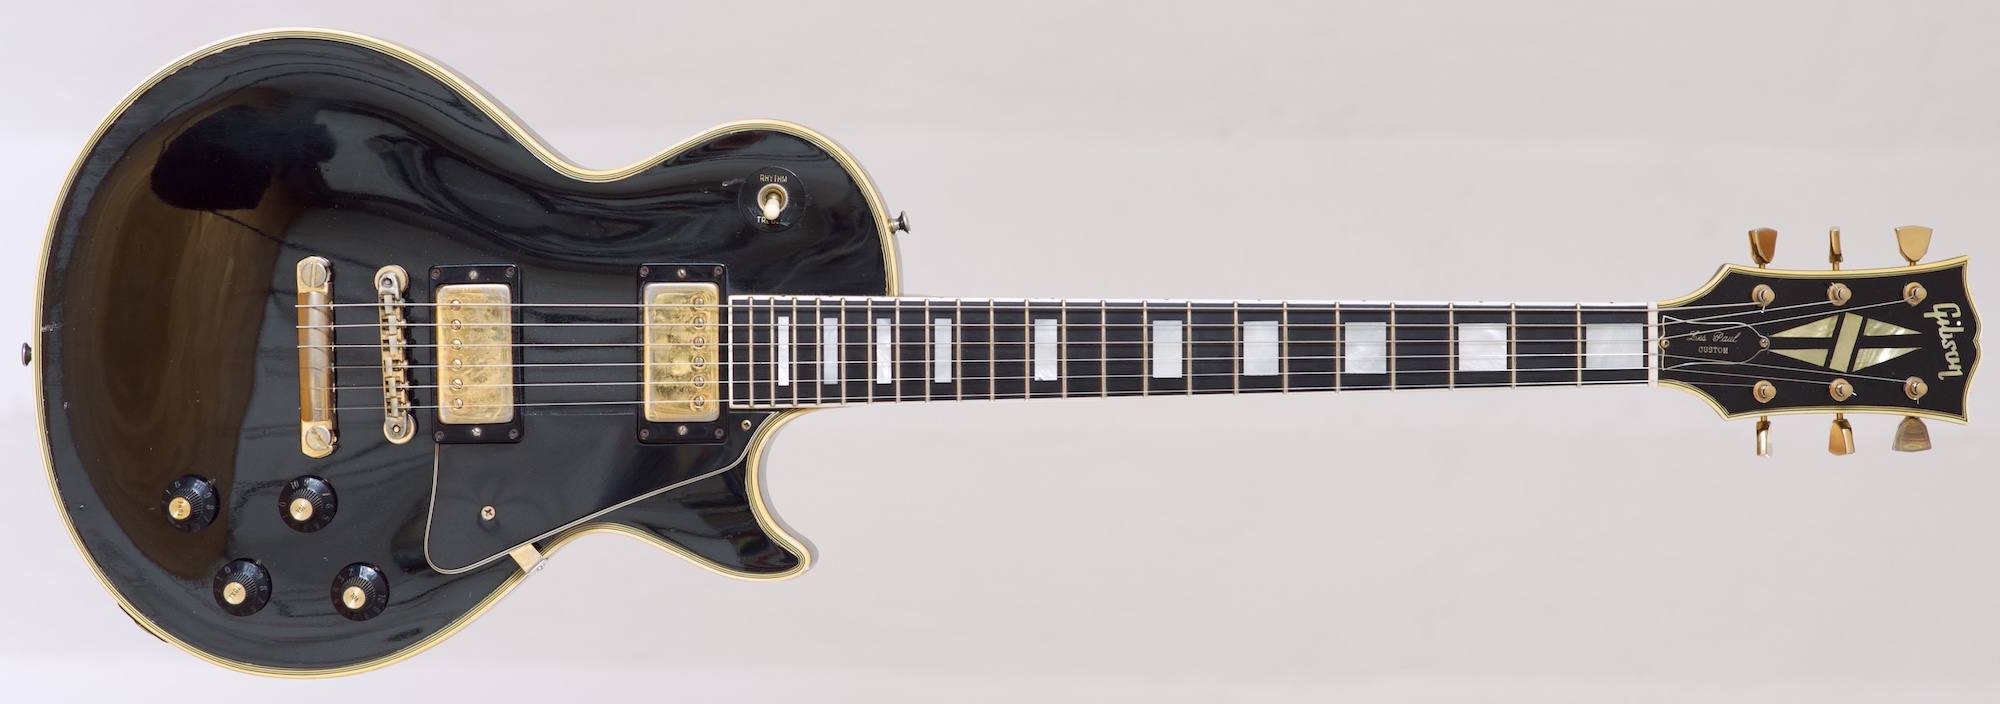 A Gibson Les Paul Custom from 1968